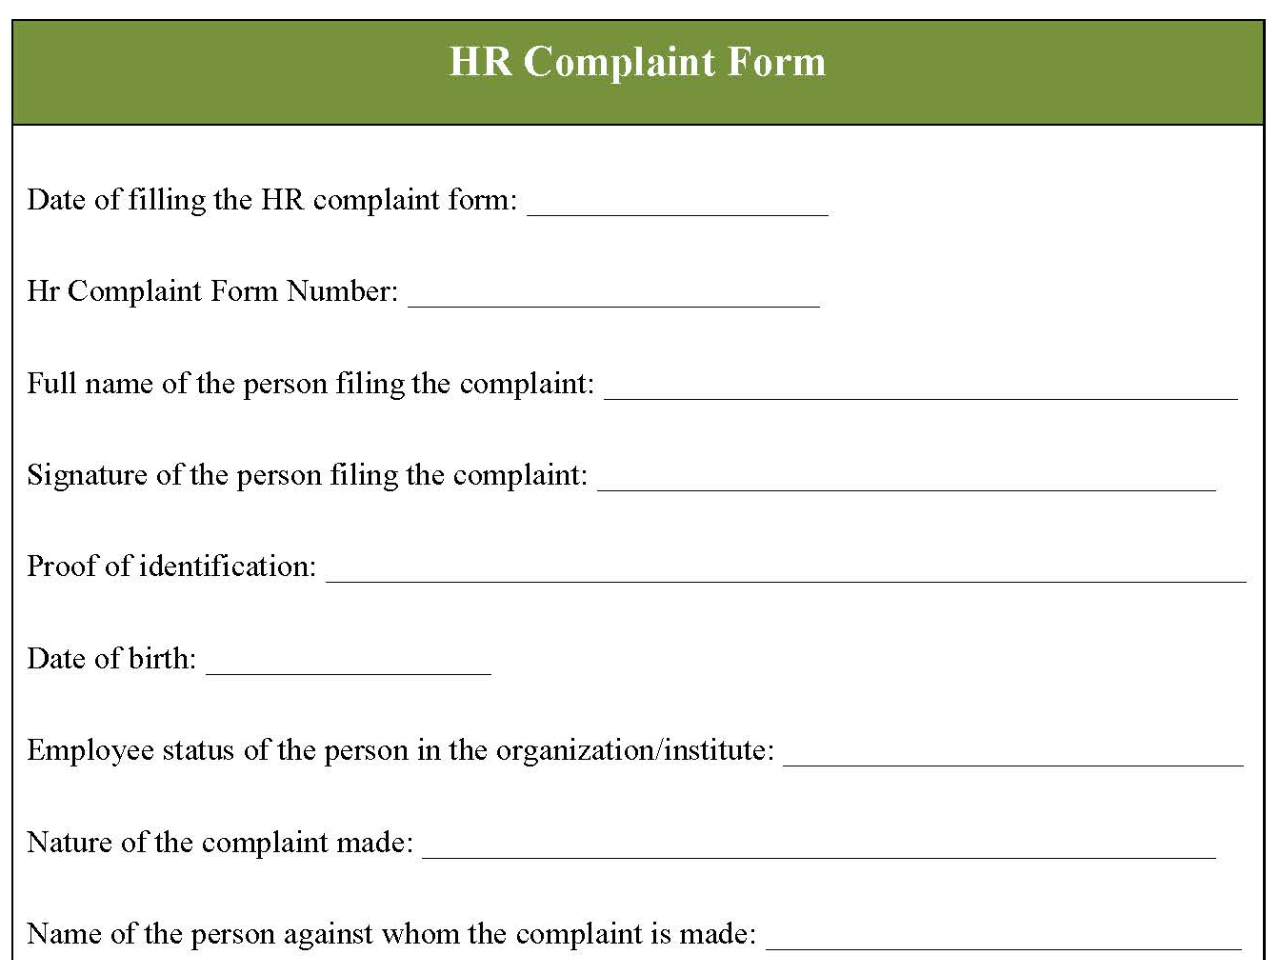 HR Complaint Form